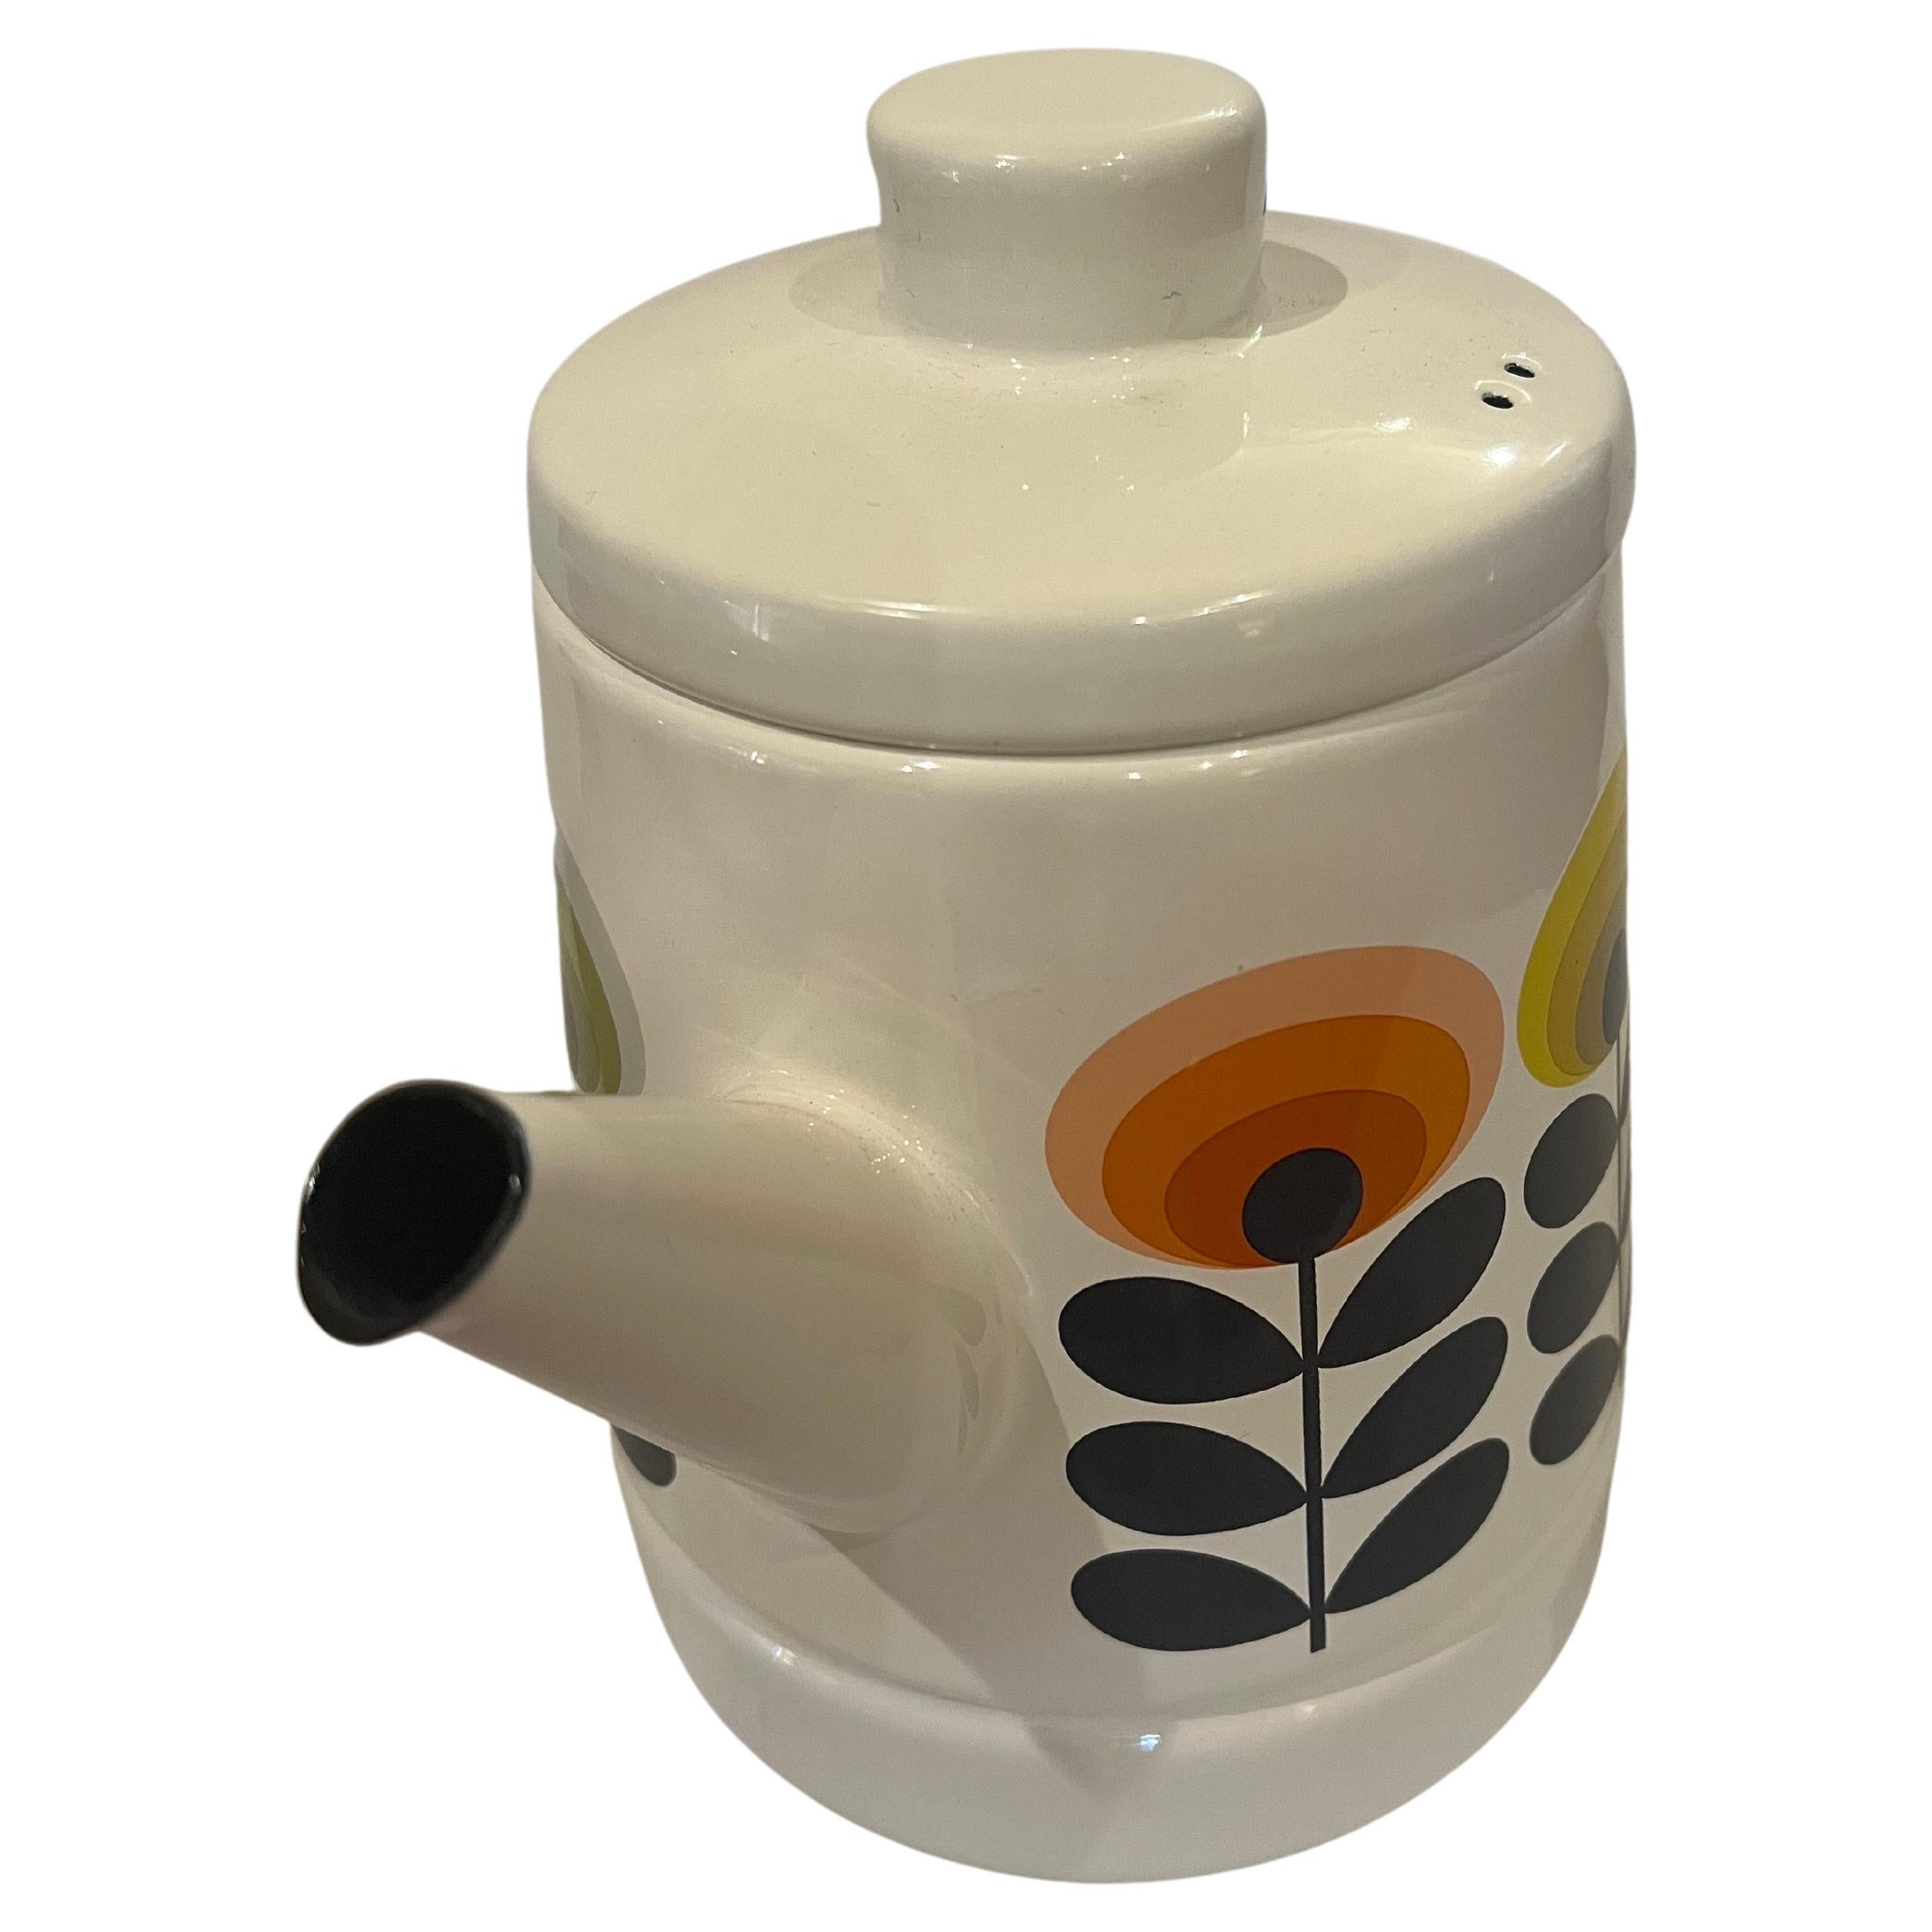 Thai Orla Kiely Enamel Teapot Coffee Teapot 1970s Designed Teak Handle